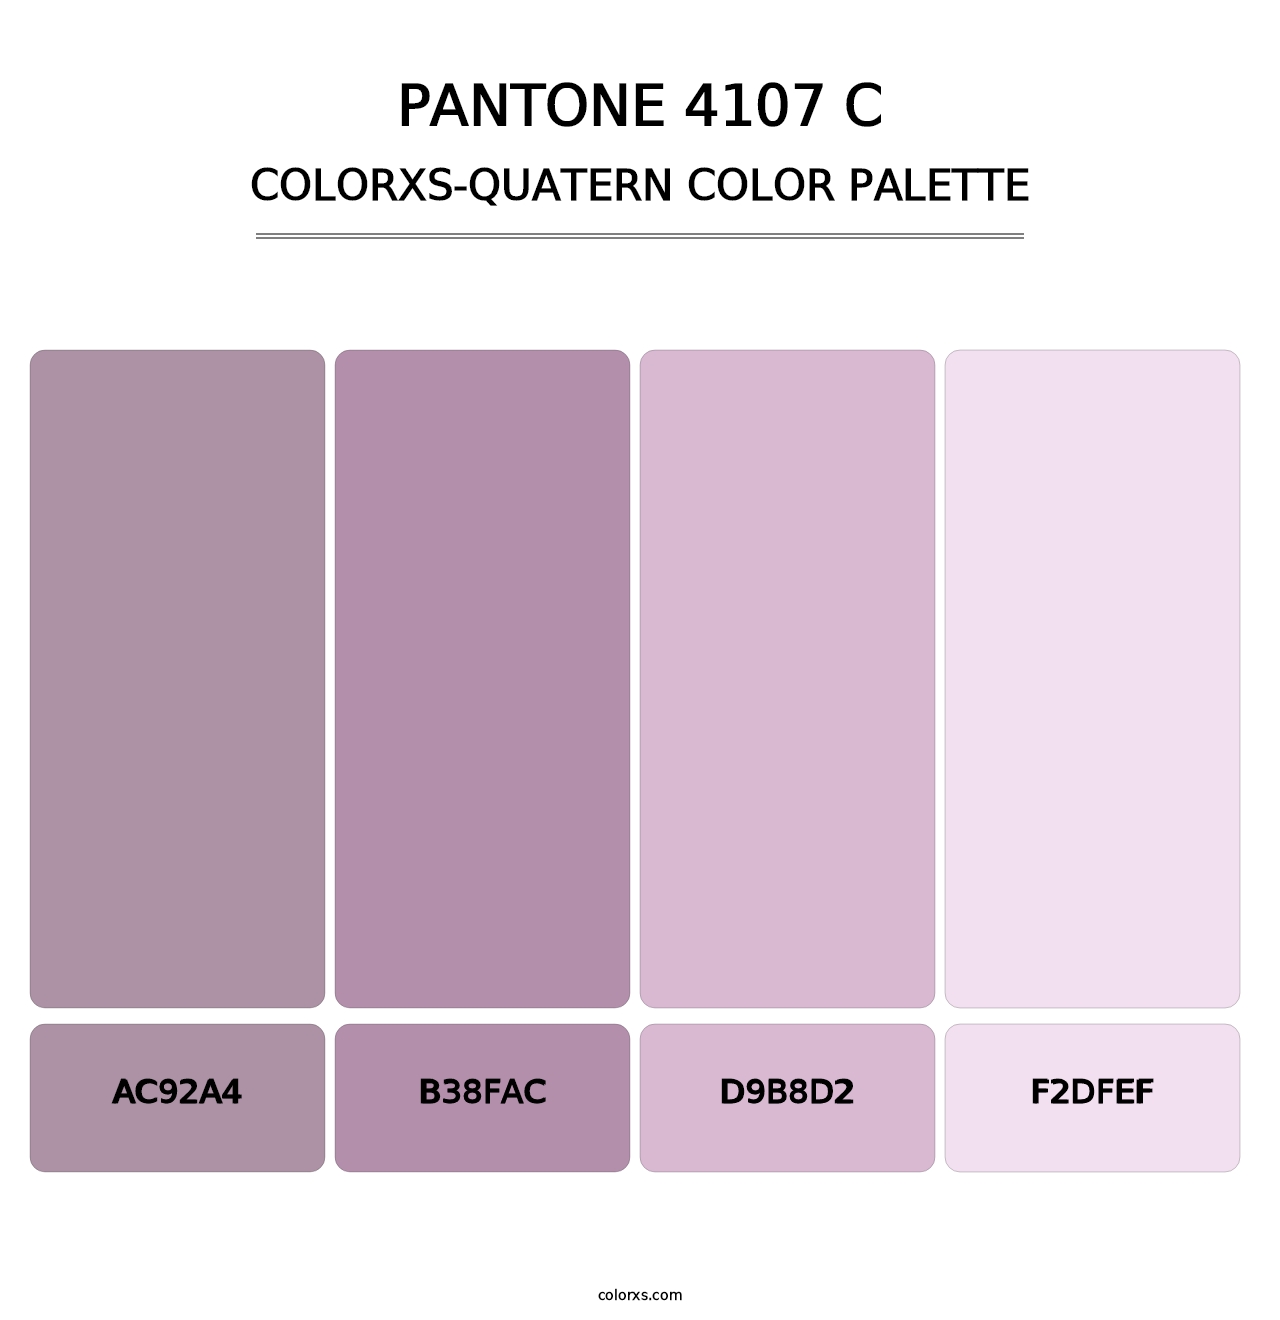 PANTONE 4107 C - Colorxs Quatern Palette